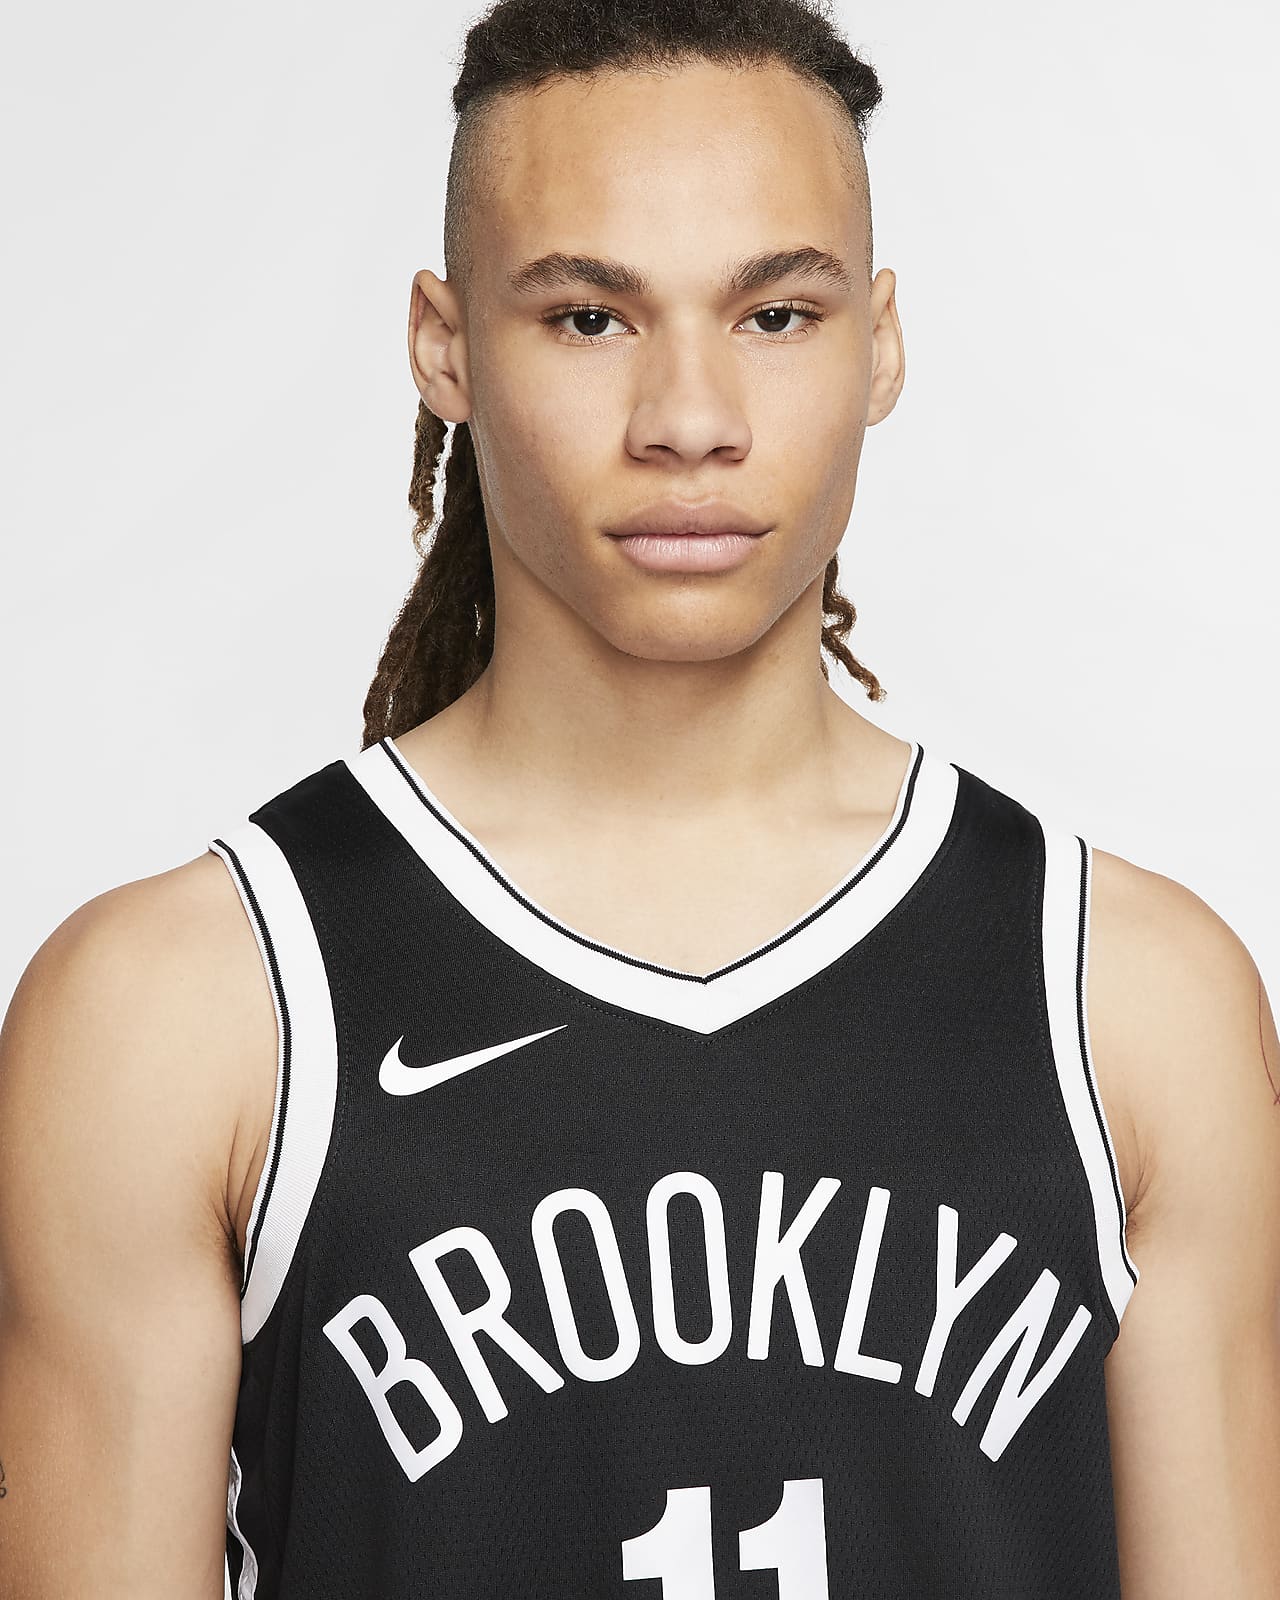 Brooklyn Nets - Kyrie Irving Swingman NBA Jersey